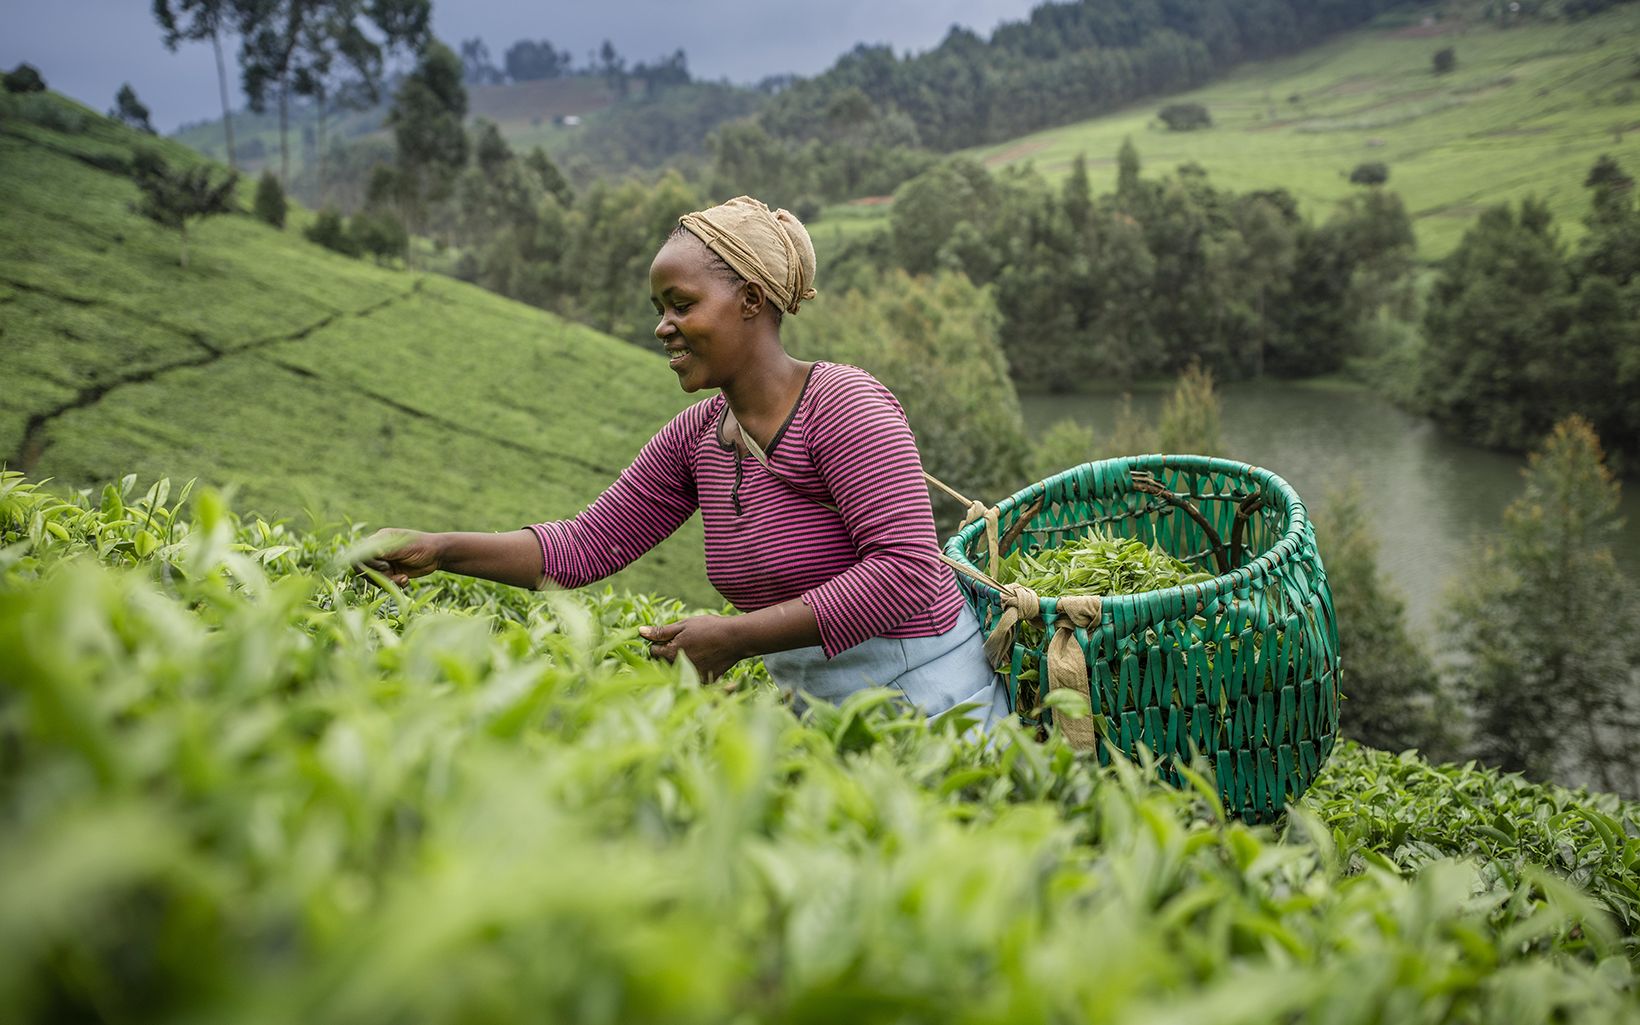 A woman picks tea on a hillside against a gray sky